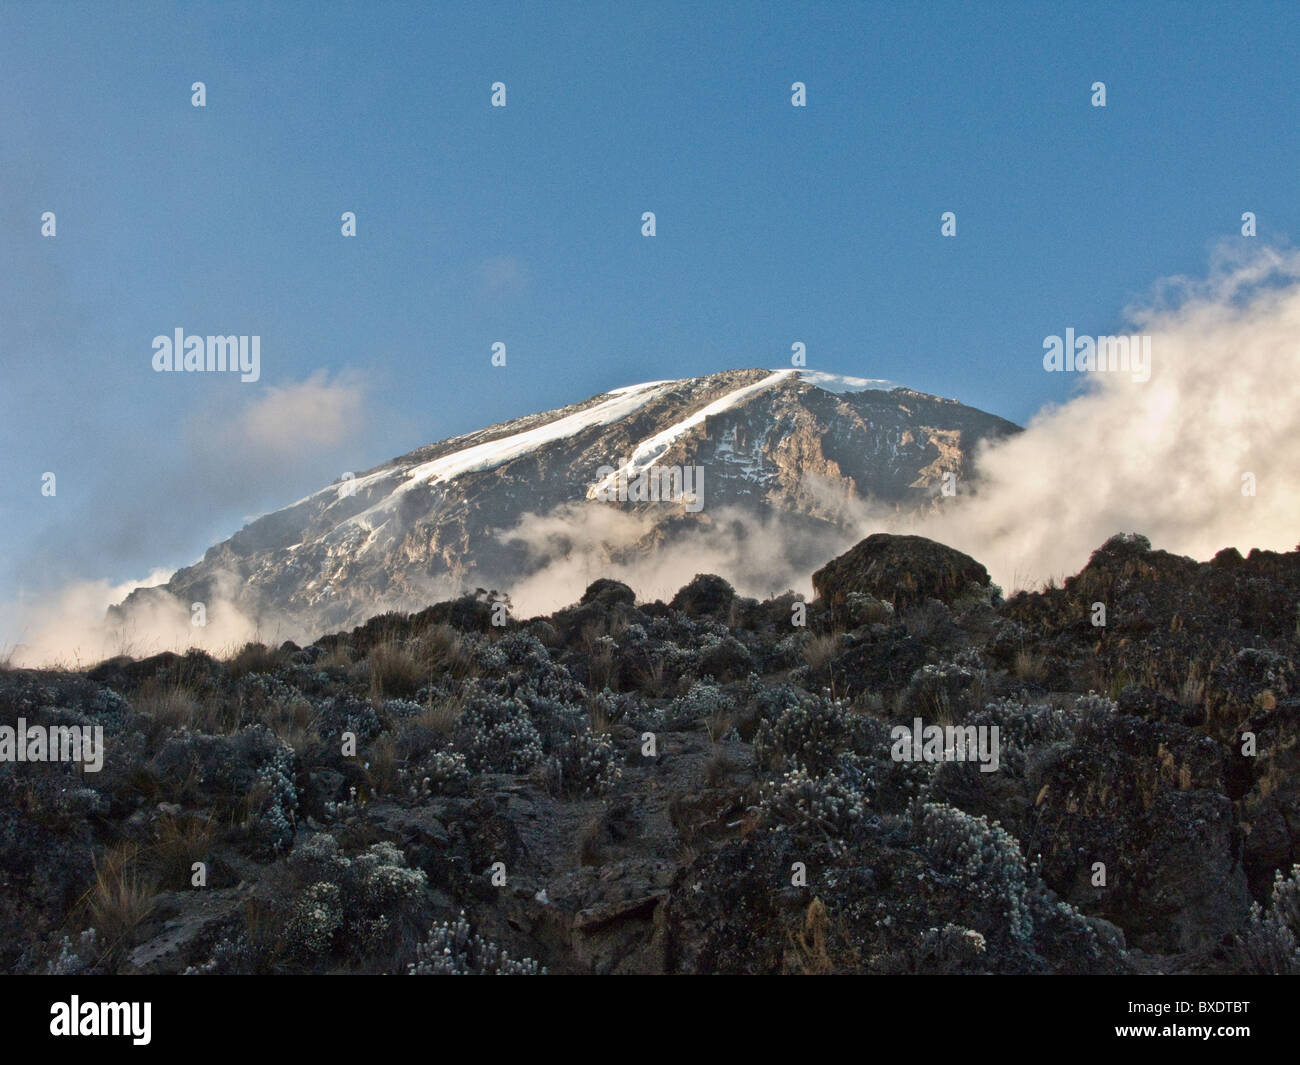 La cumbre del Kilimanjaro mira desde abajo aumento de bruma y nubes en los valles de abajo. Foto de stock